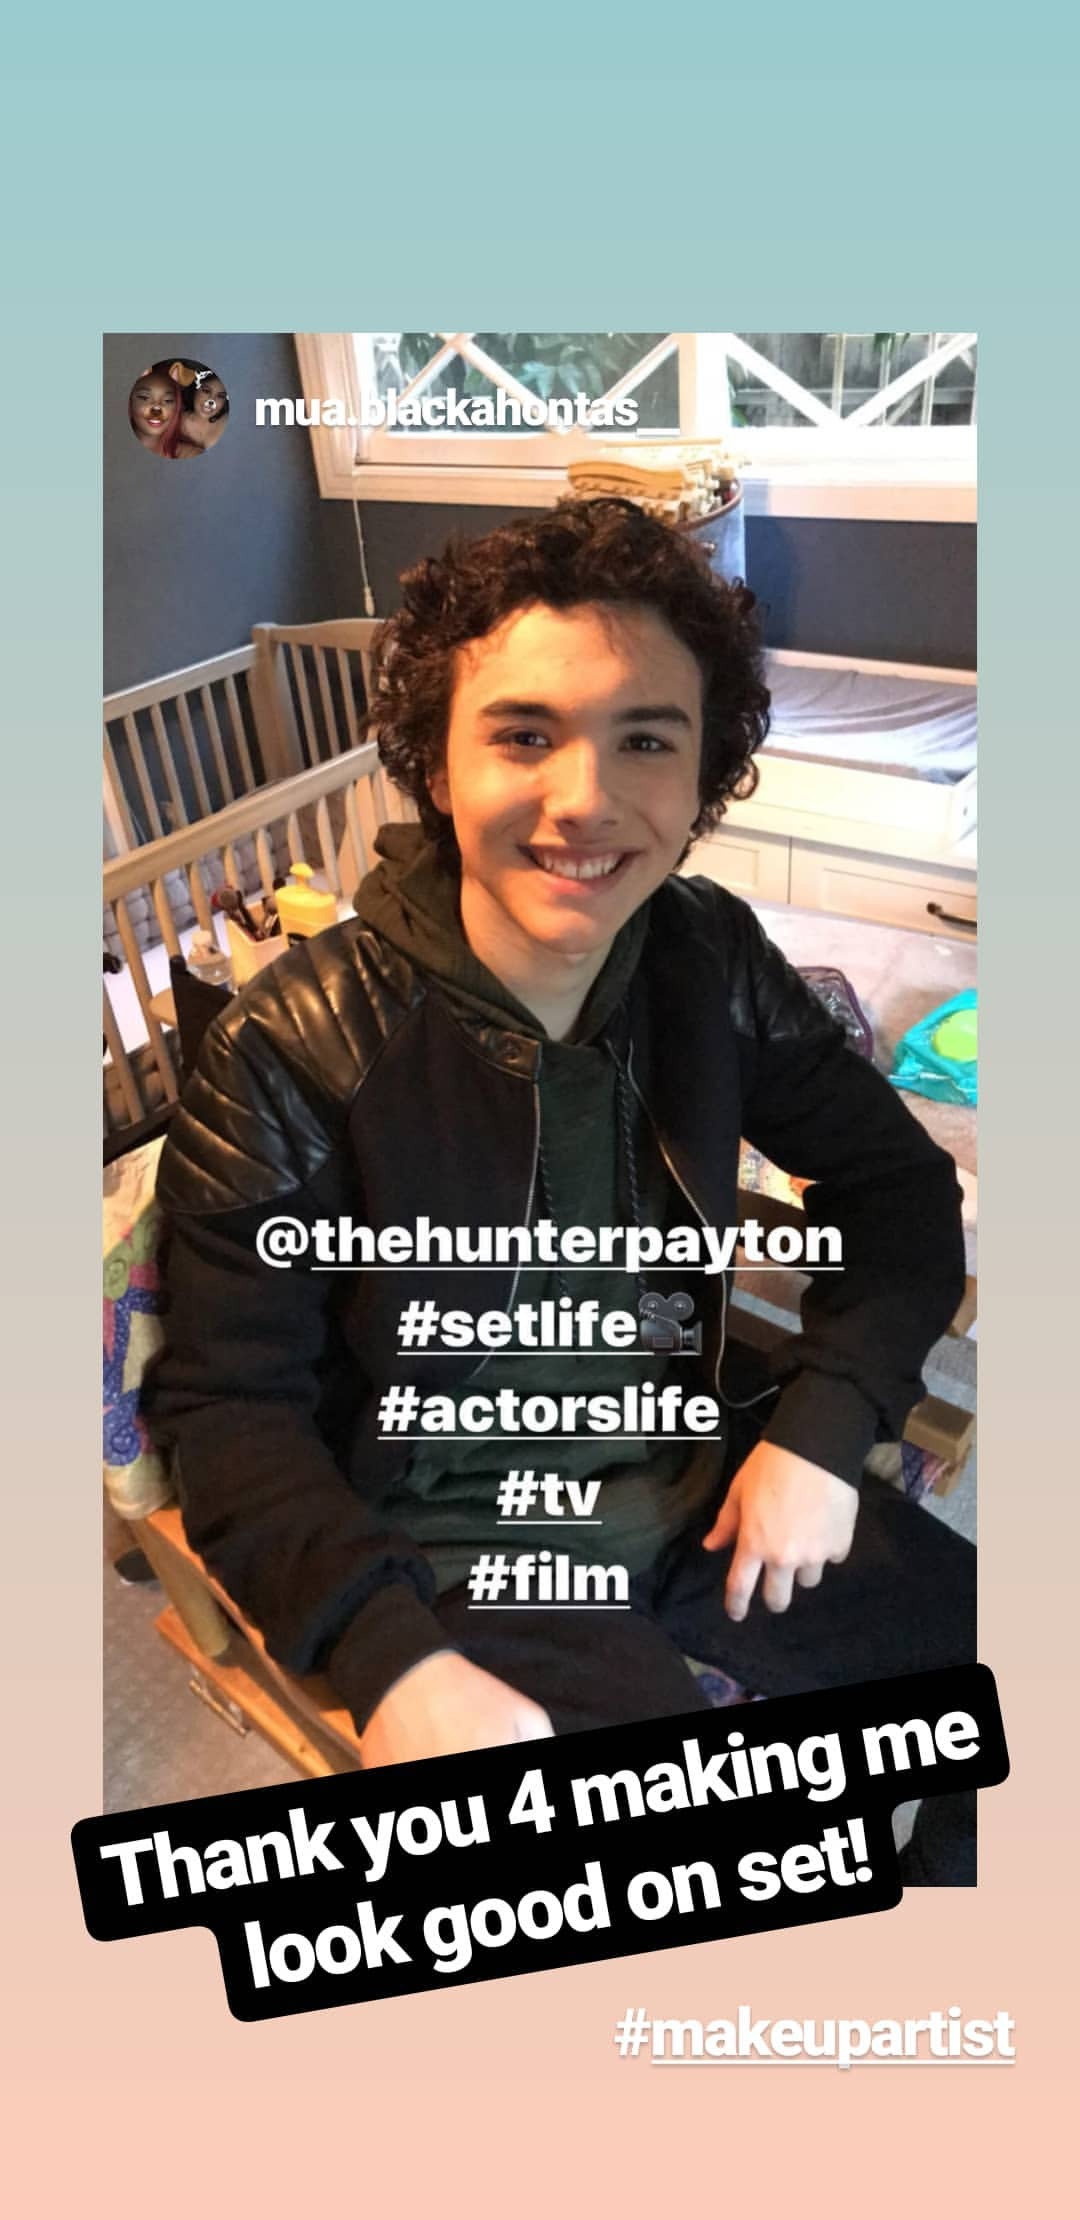 General photo of Hunter Payton